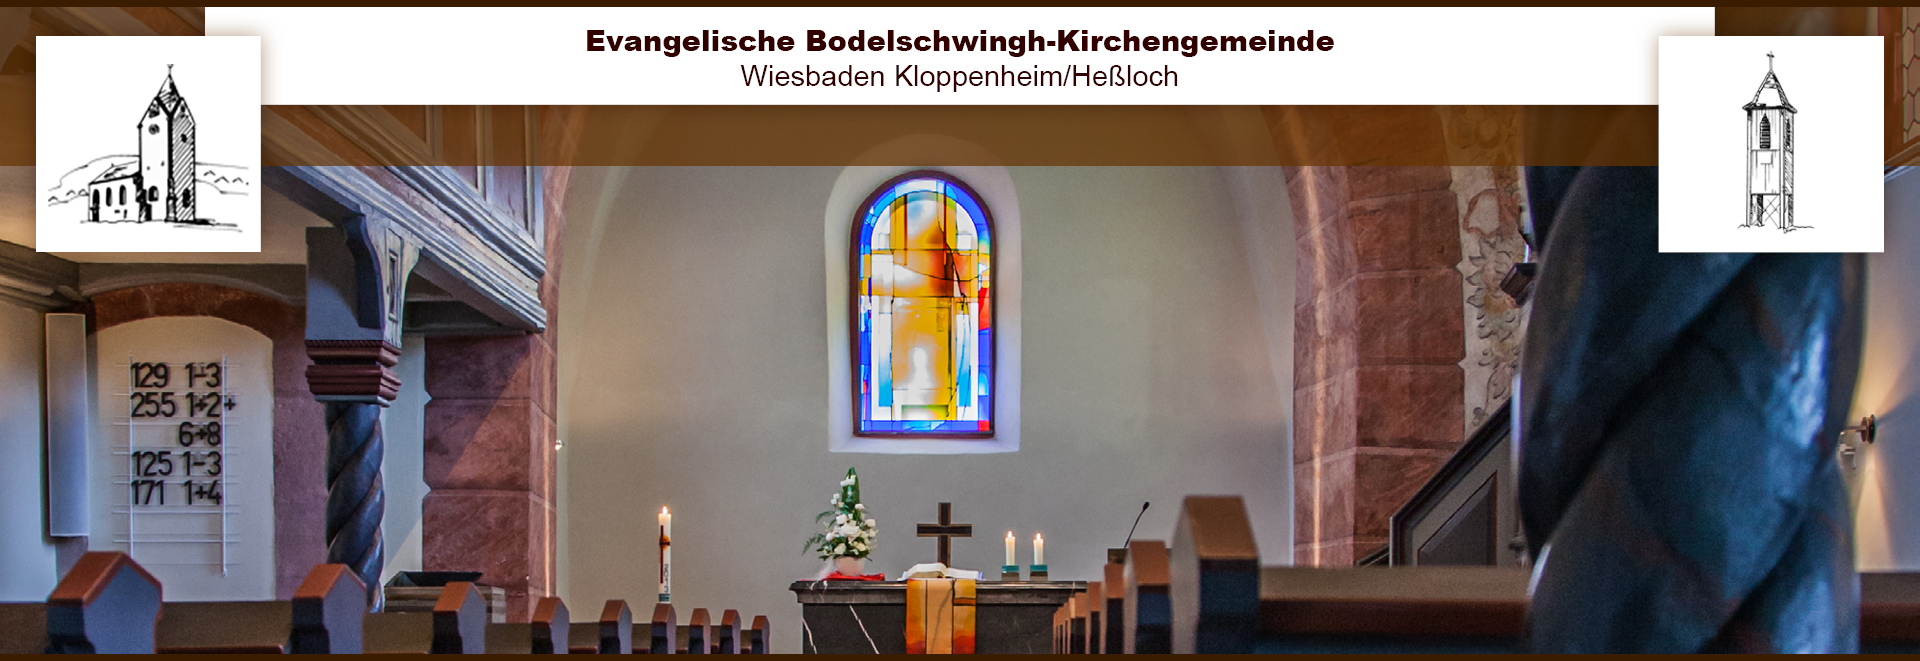 Kirche Kloppenheim